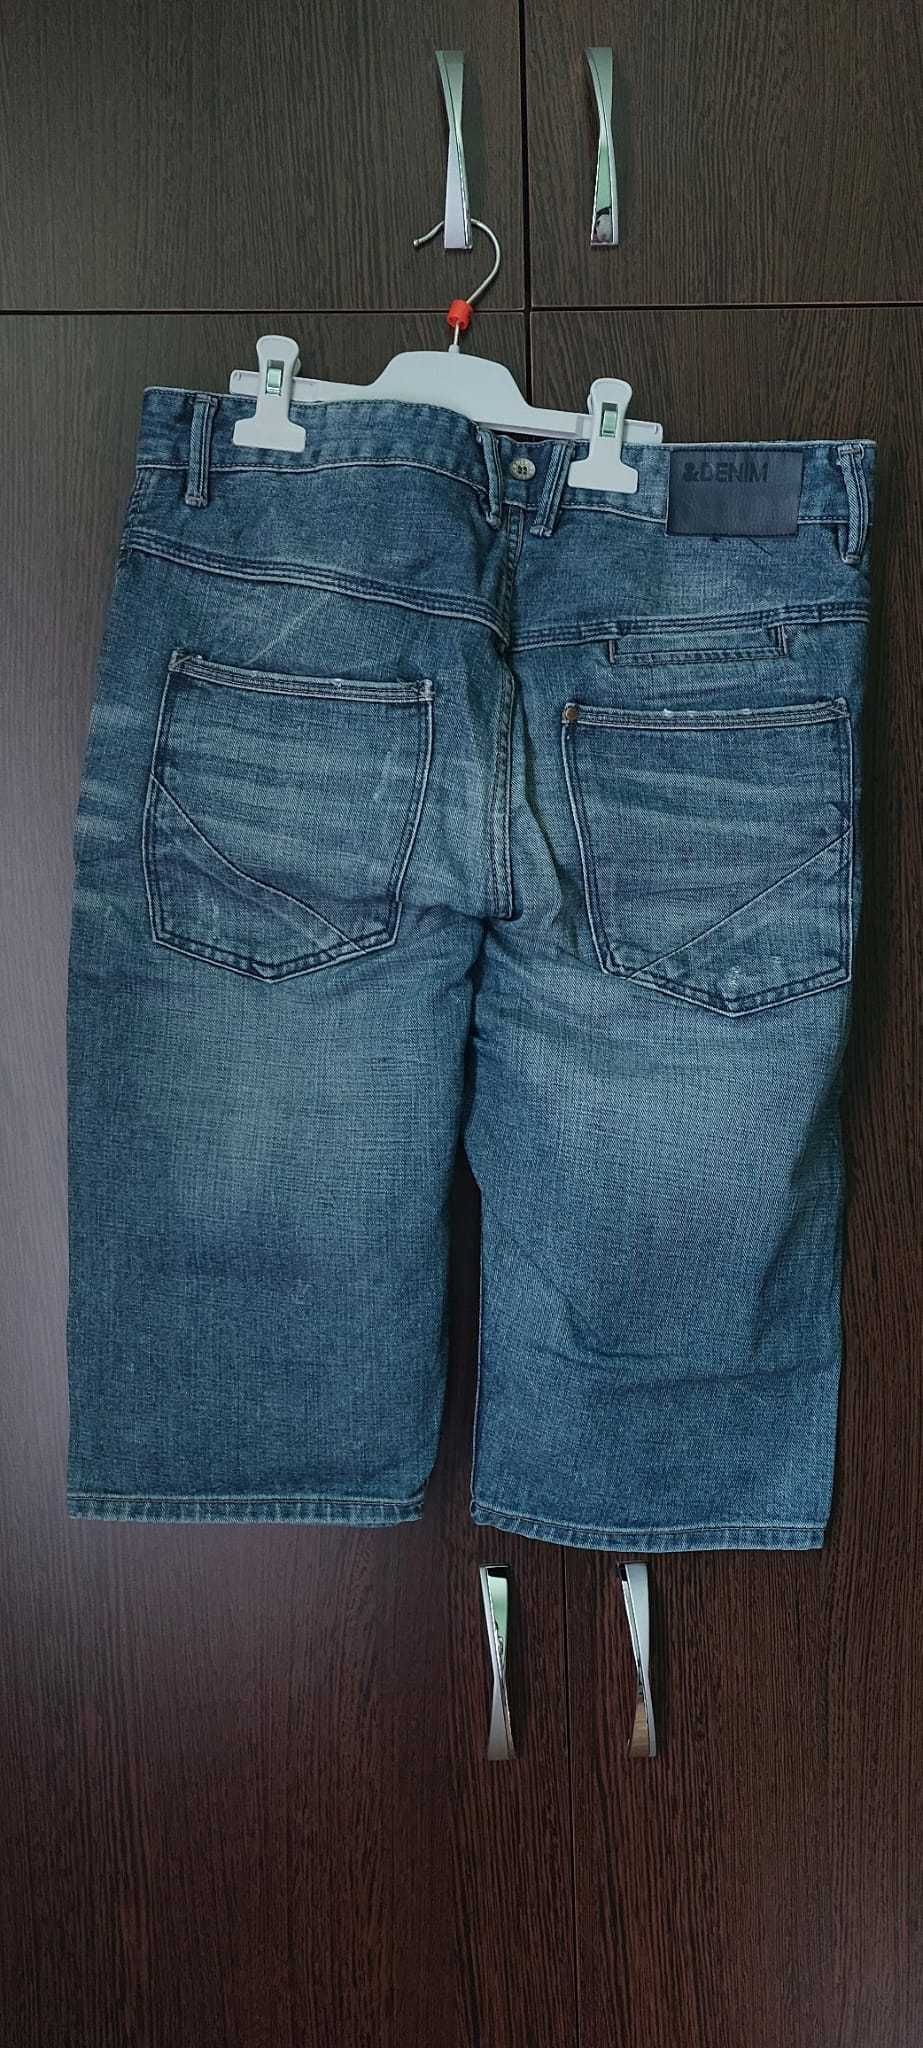 Pantaloni scurti eleganti bleumarin noi + pantaloni scurti denim